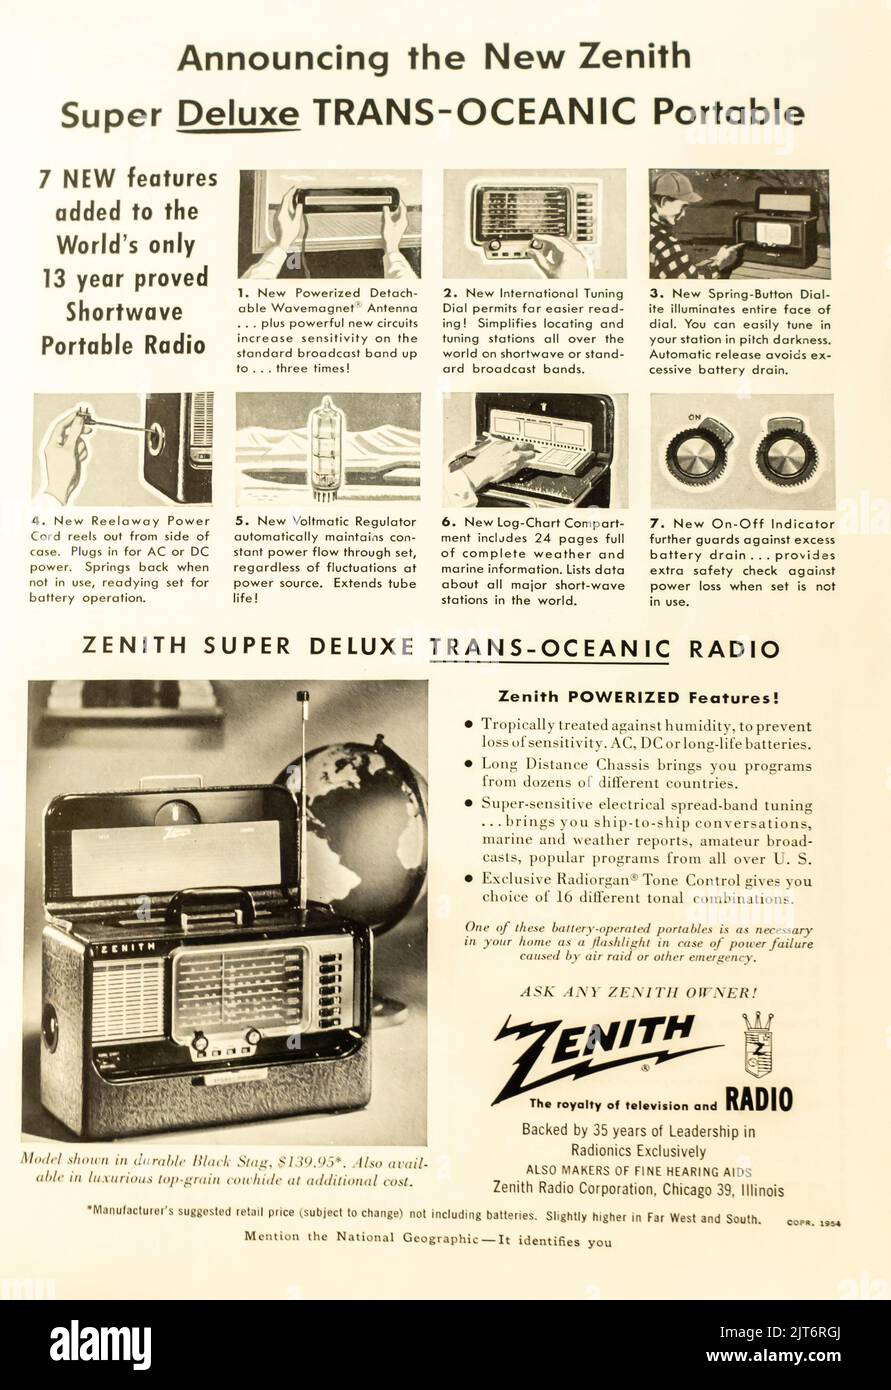 Publicité radio portable Zenith placée dans le magazine NatGeo, 1954 Banque D'Images